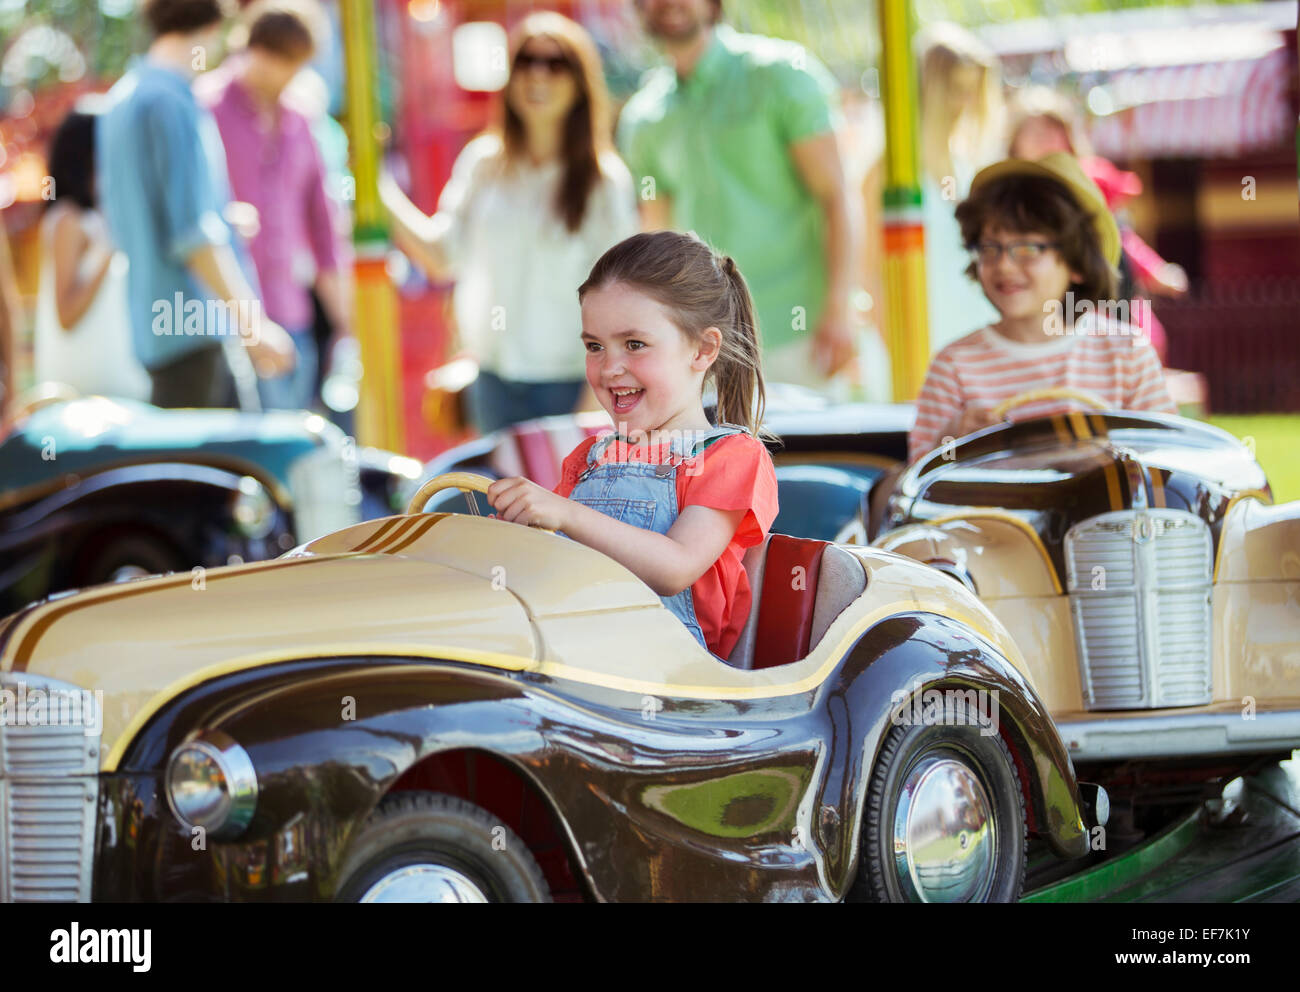 Cheerful girl sur carrousel en amusement park Banque D'Images